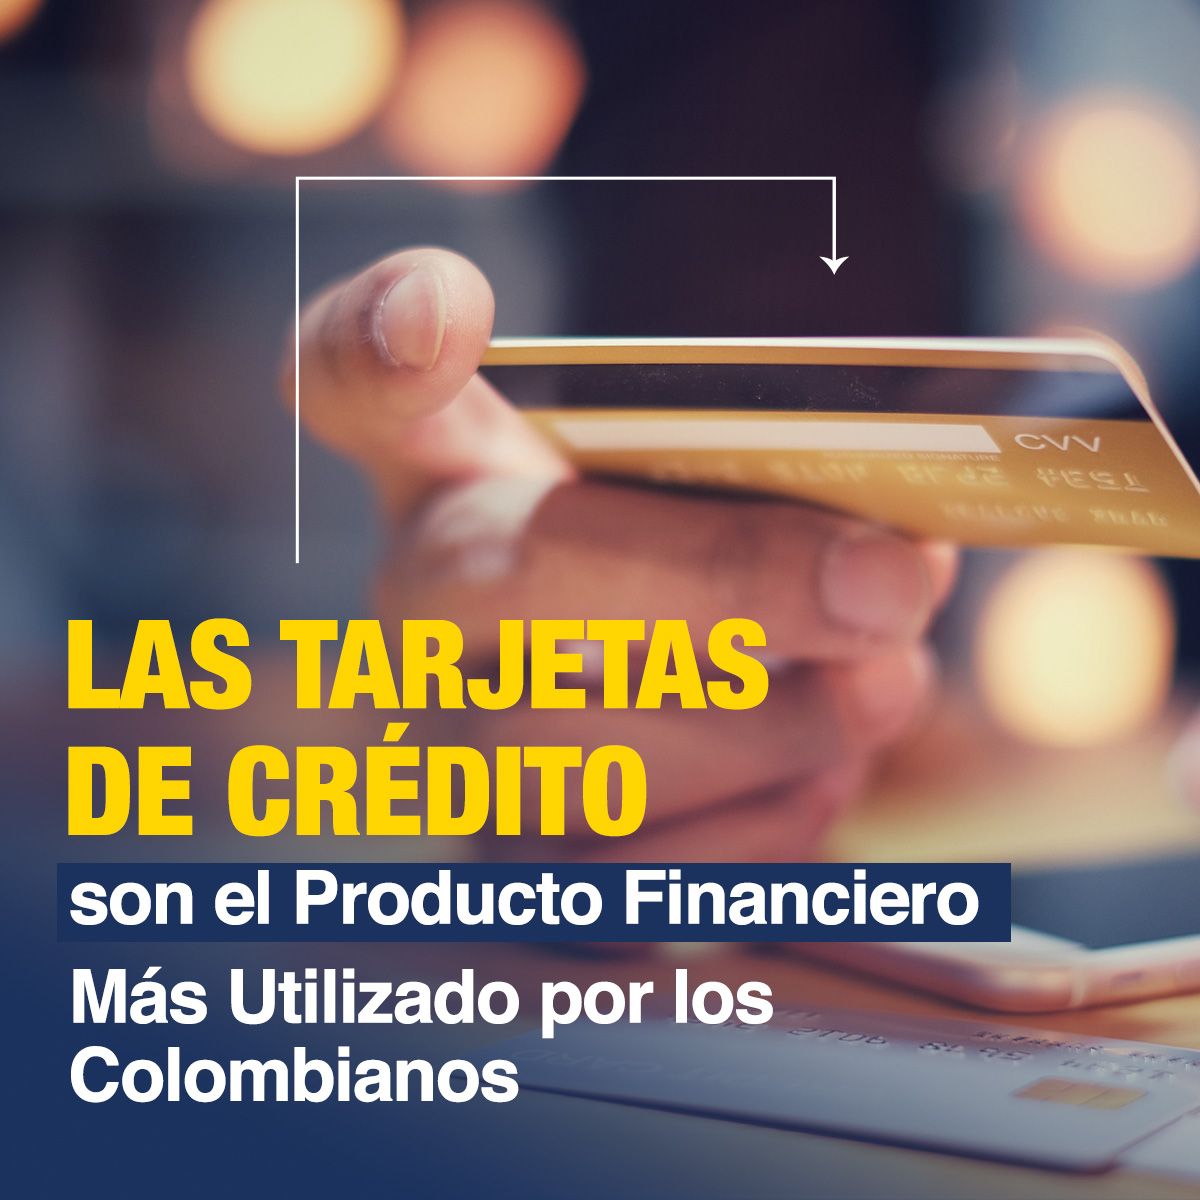 Las Tarjetas de Crédito son el Producto Financiero Más Utilizado por los Colombianos